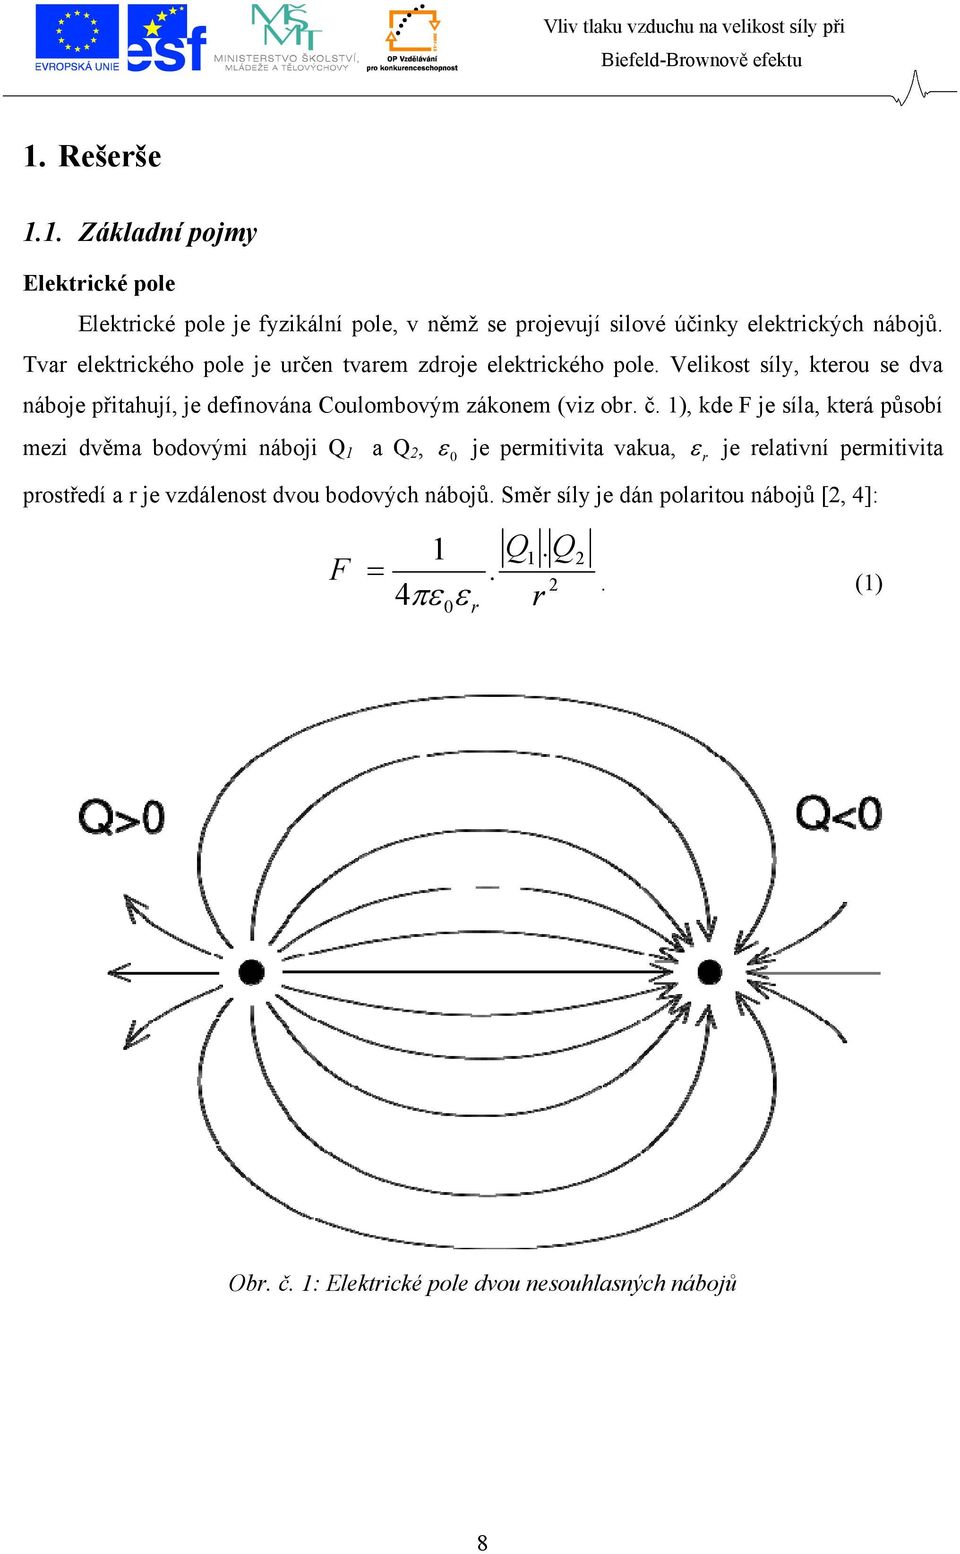 Velikost síly, kterou se dva náboje přitahují, je definována Coulombovým zákonem (viz obr. č.